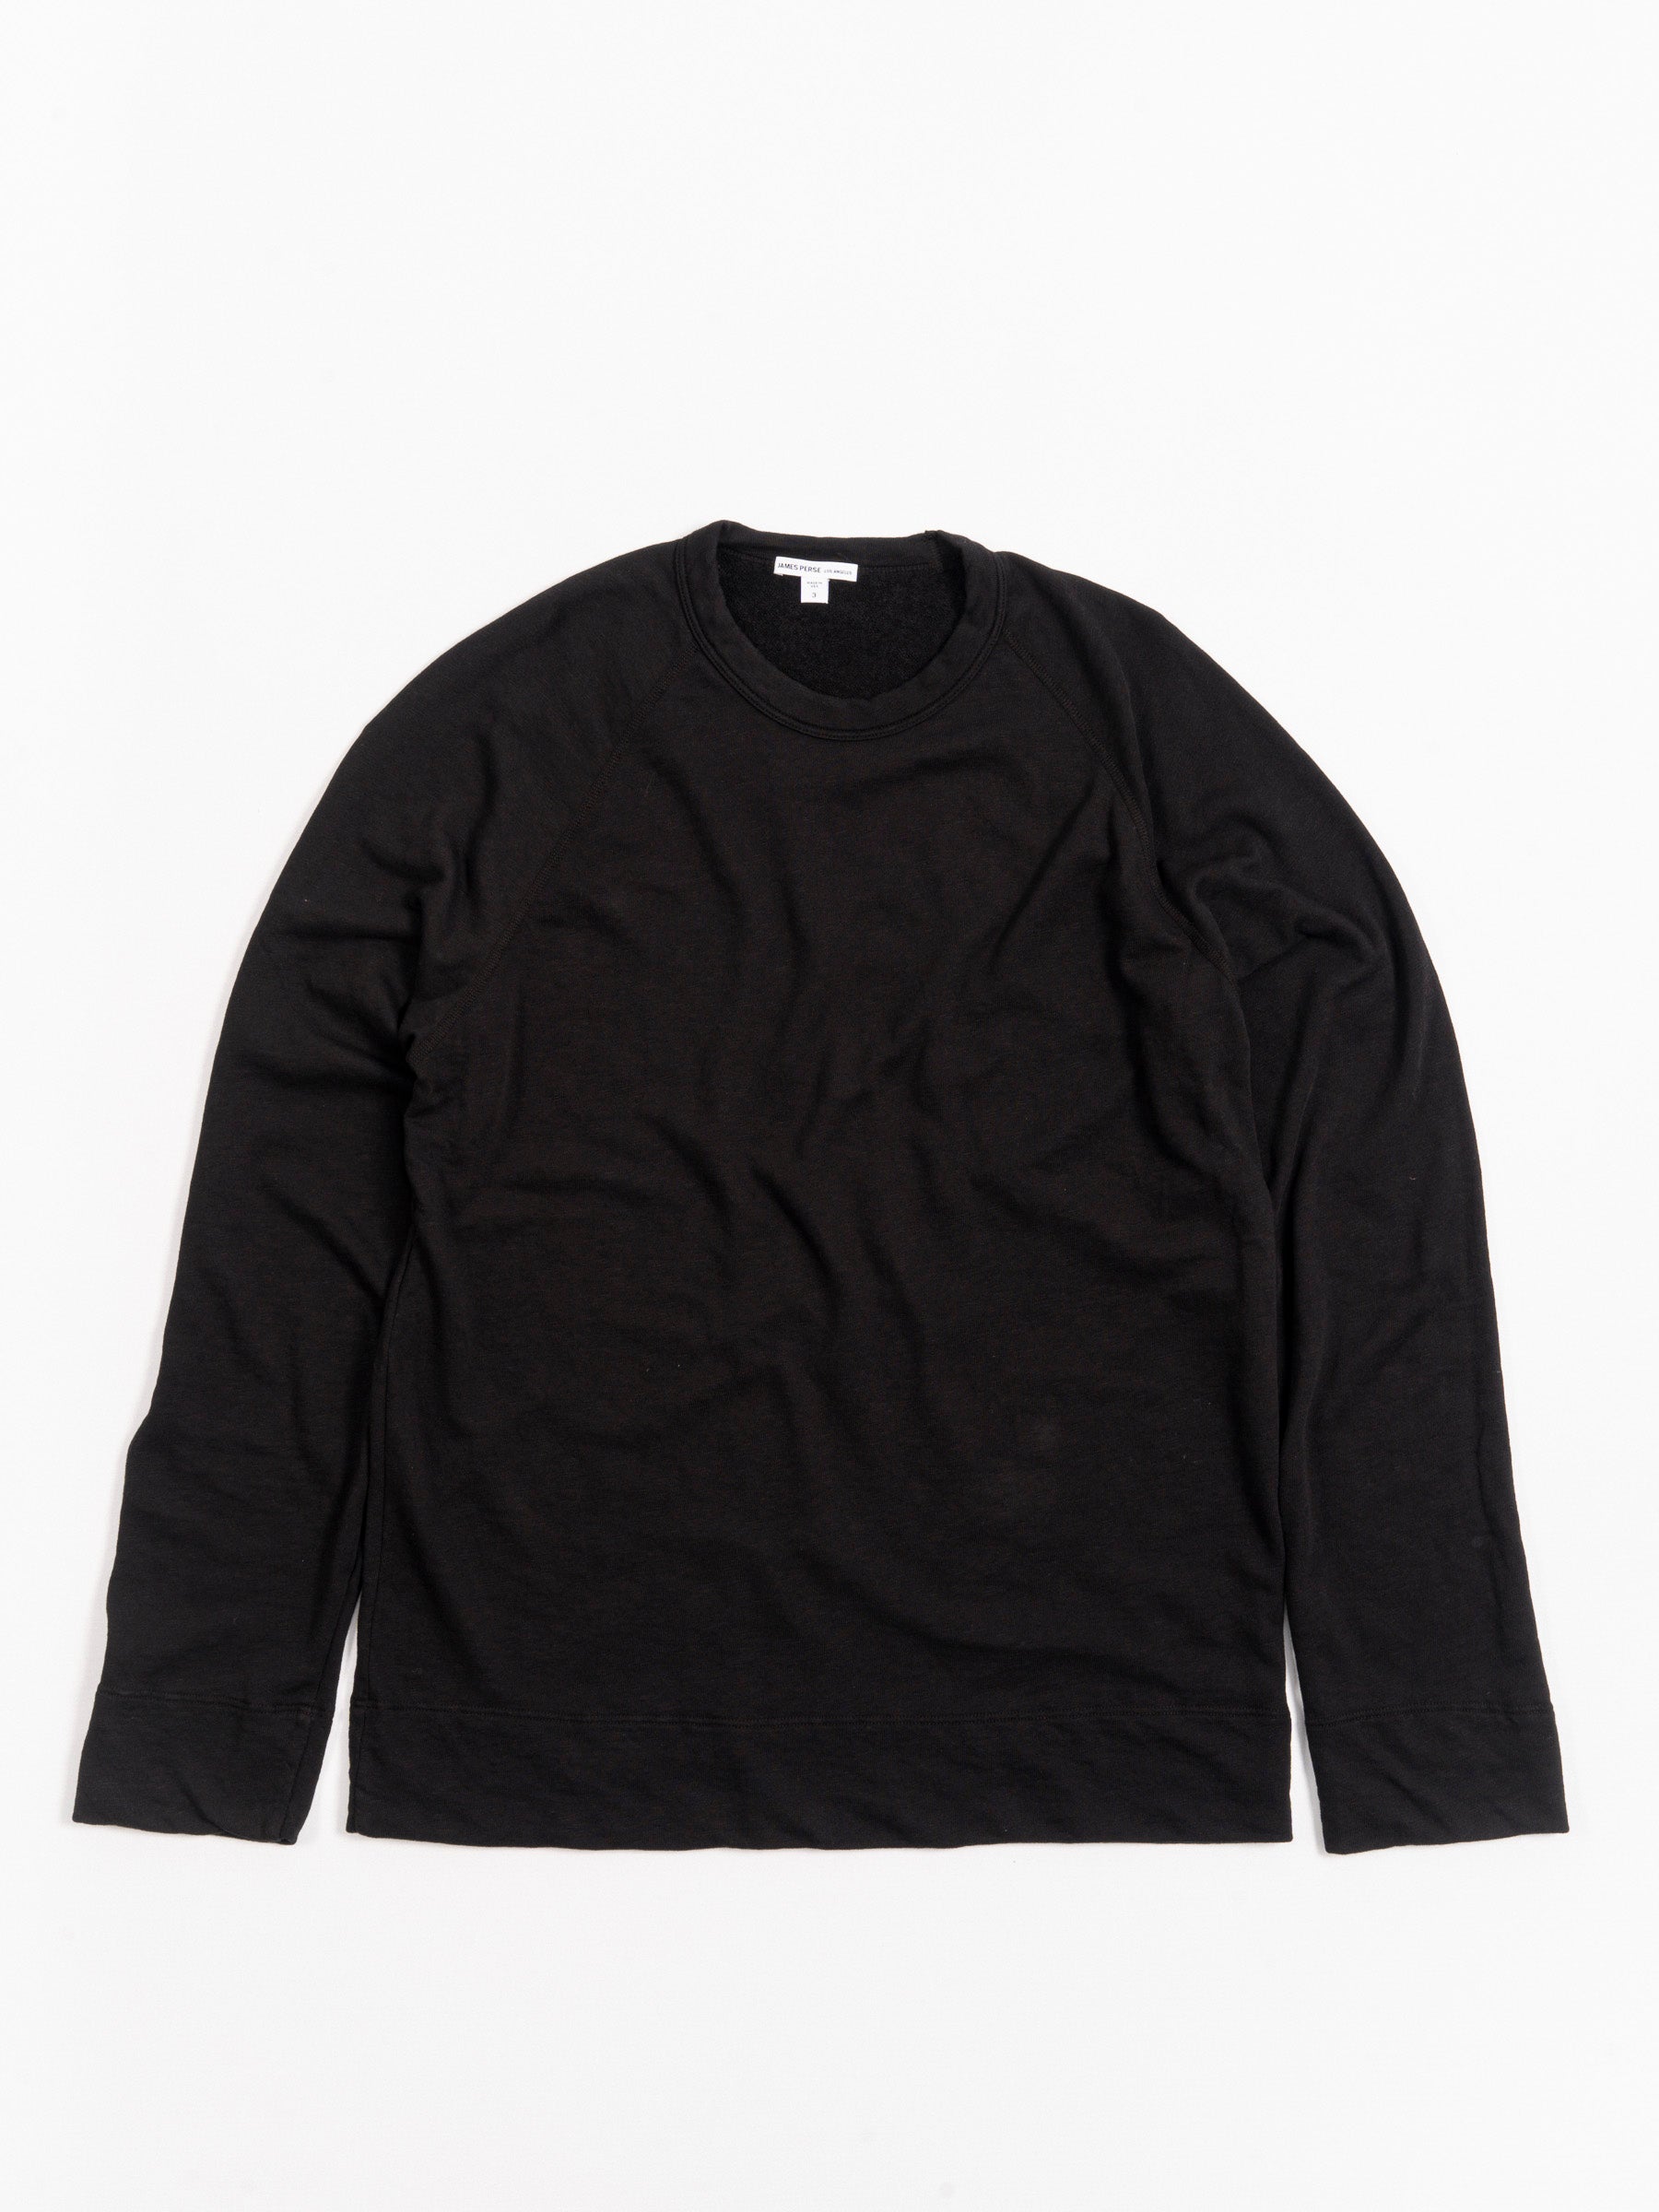 Vintage Sweatshirt Black